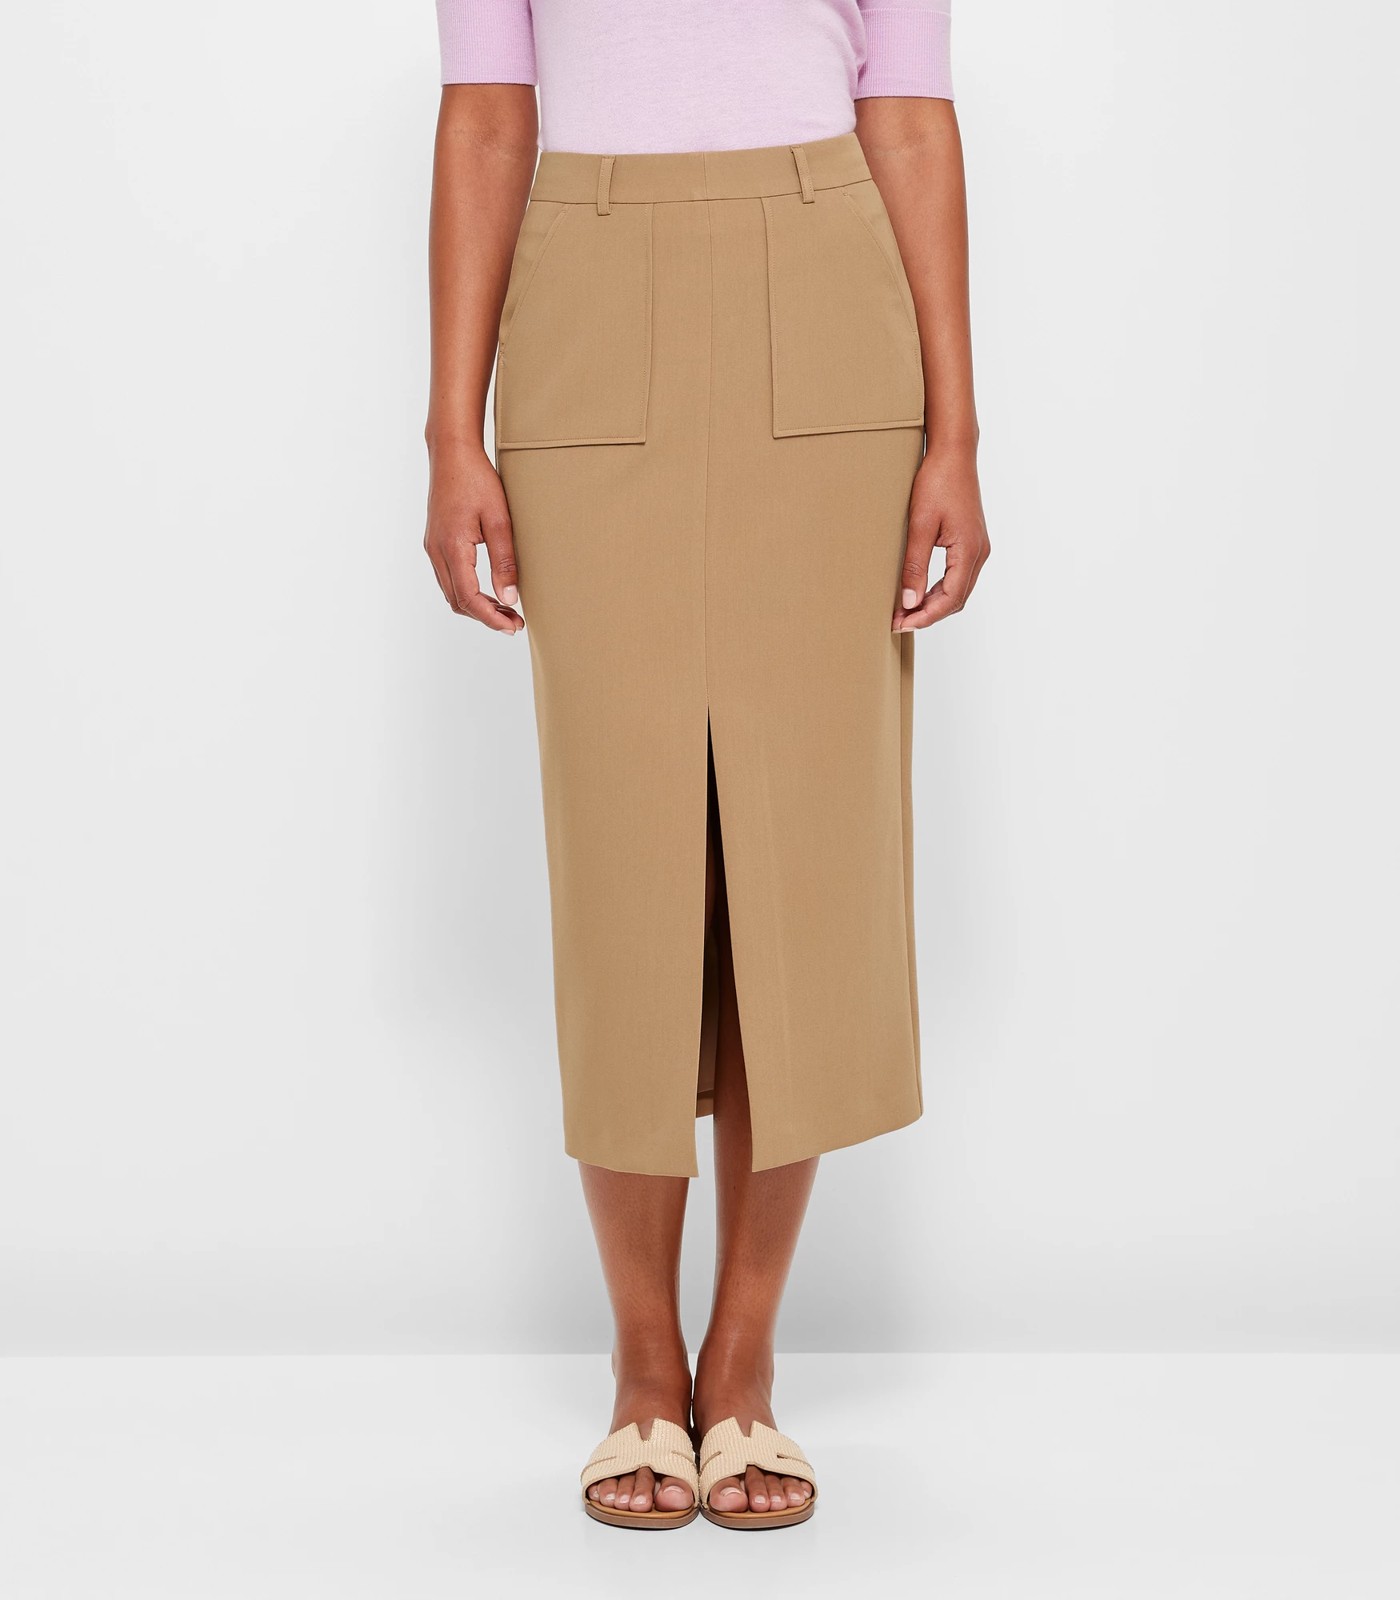 Pocket Column Skirt - Preview | Target Australia